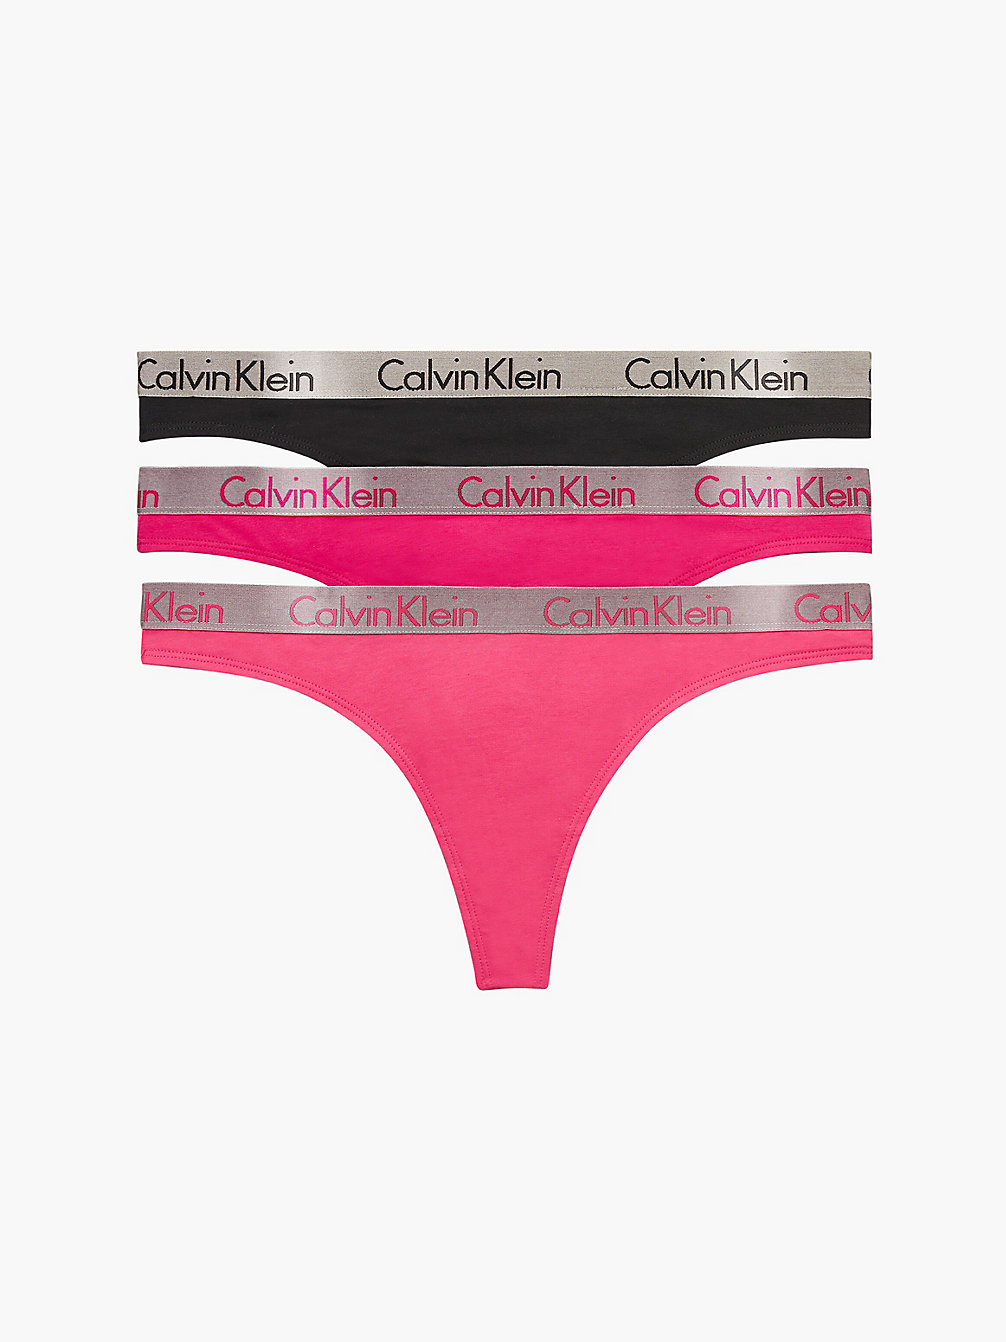 Confezione Da 3 Perizomi - Radiant Cotton > PINK SPLENDOR/BRIAR ROSE/BLACK > undefined donna > Calvin Klein